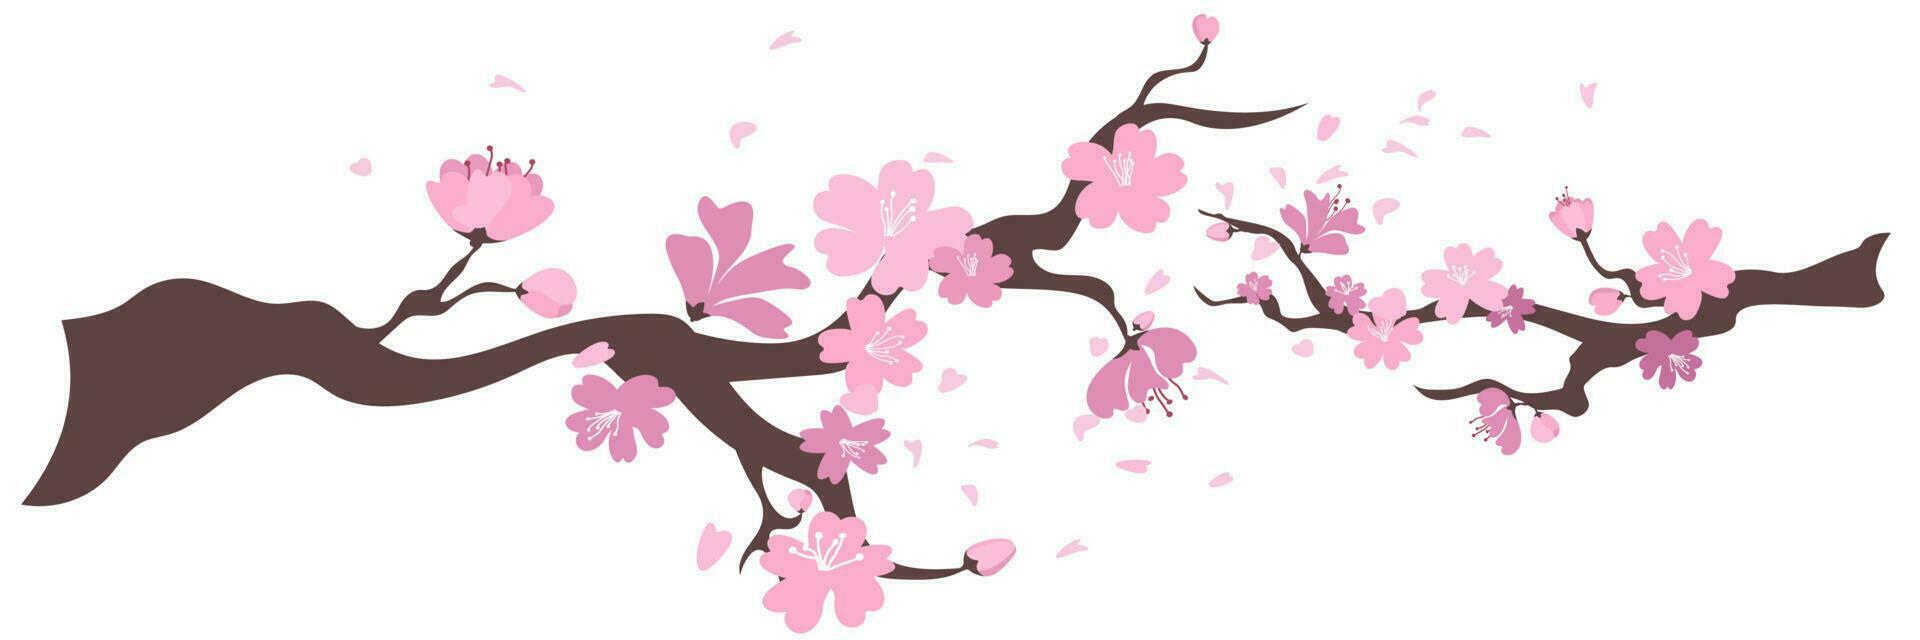 sakura blommor ram. bakgrund med blomma körsbär träd grenar. japansk blommor på vit bakgrund. vektor illustration.